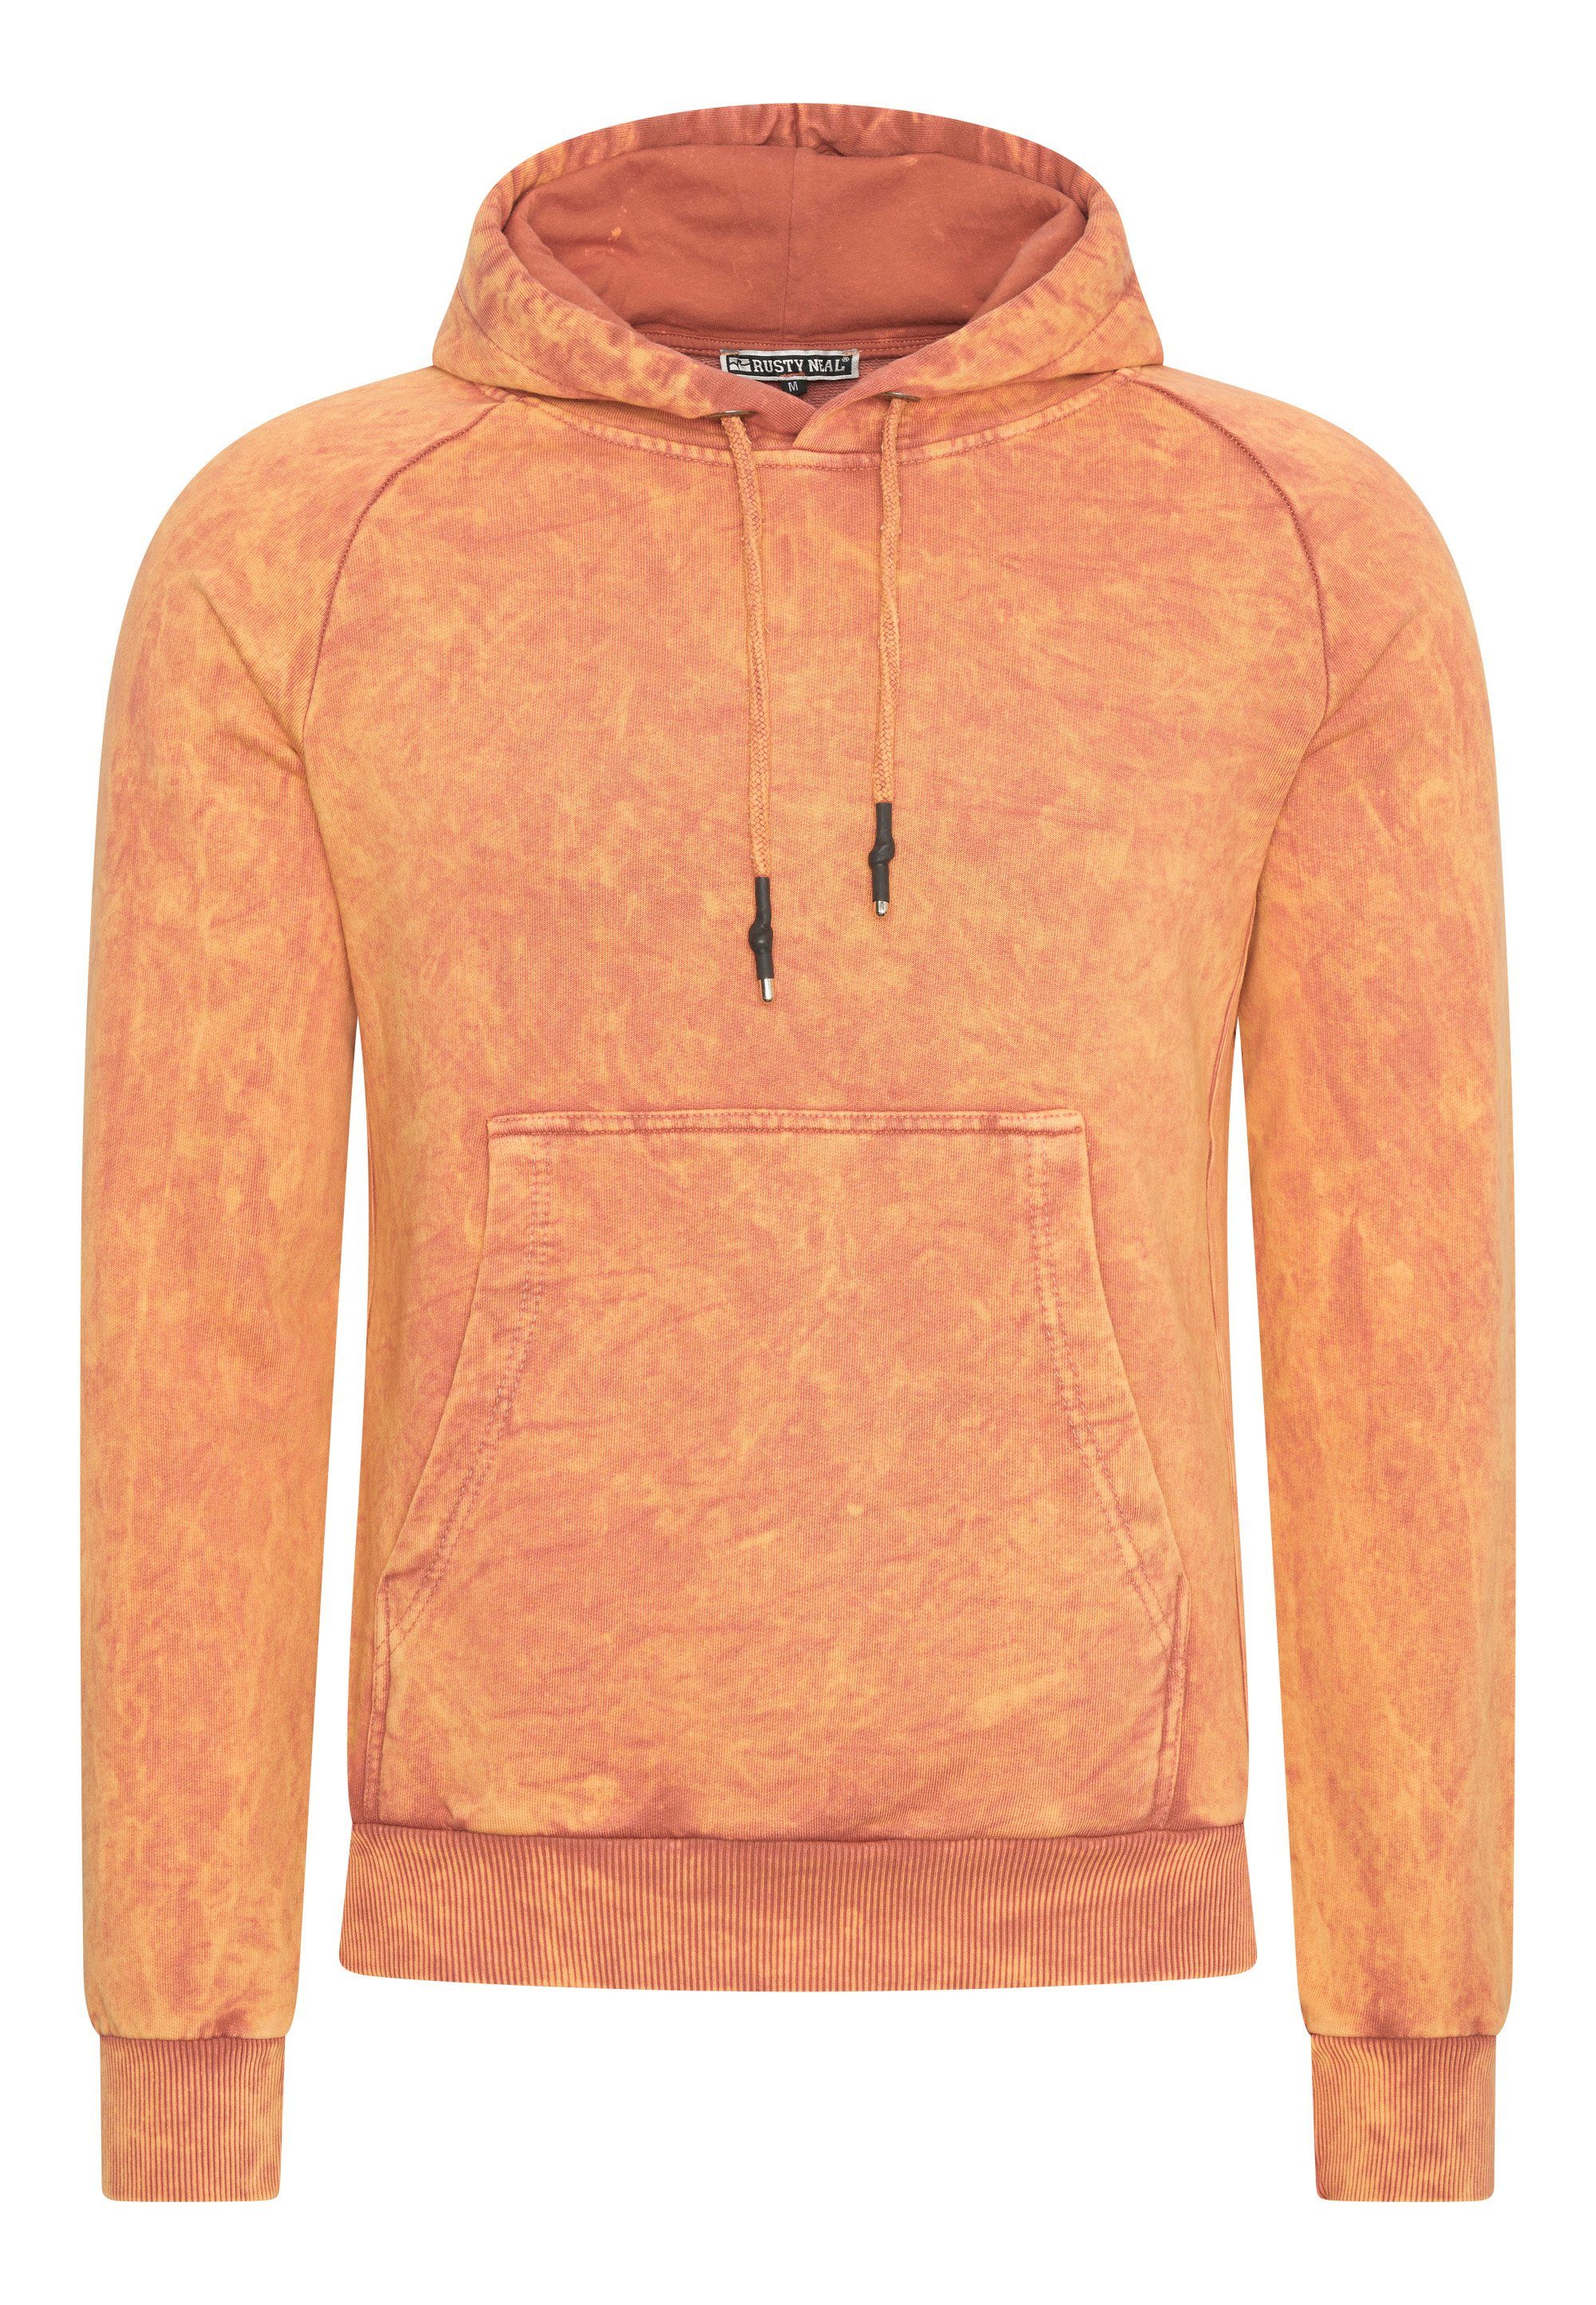 Rusty Neal Kapuzensweatshirt in verwaschenem Design orange